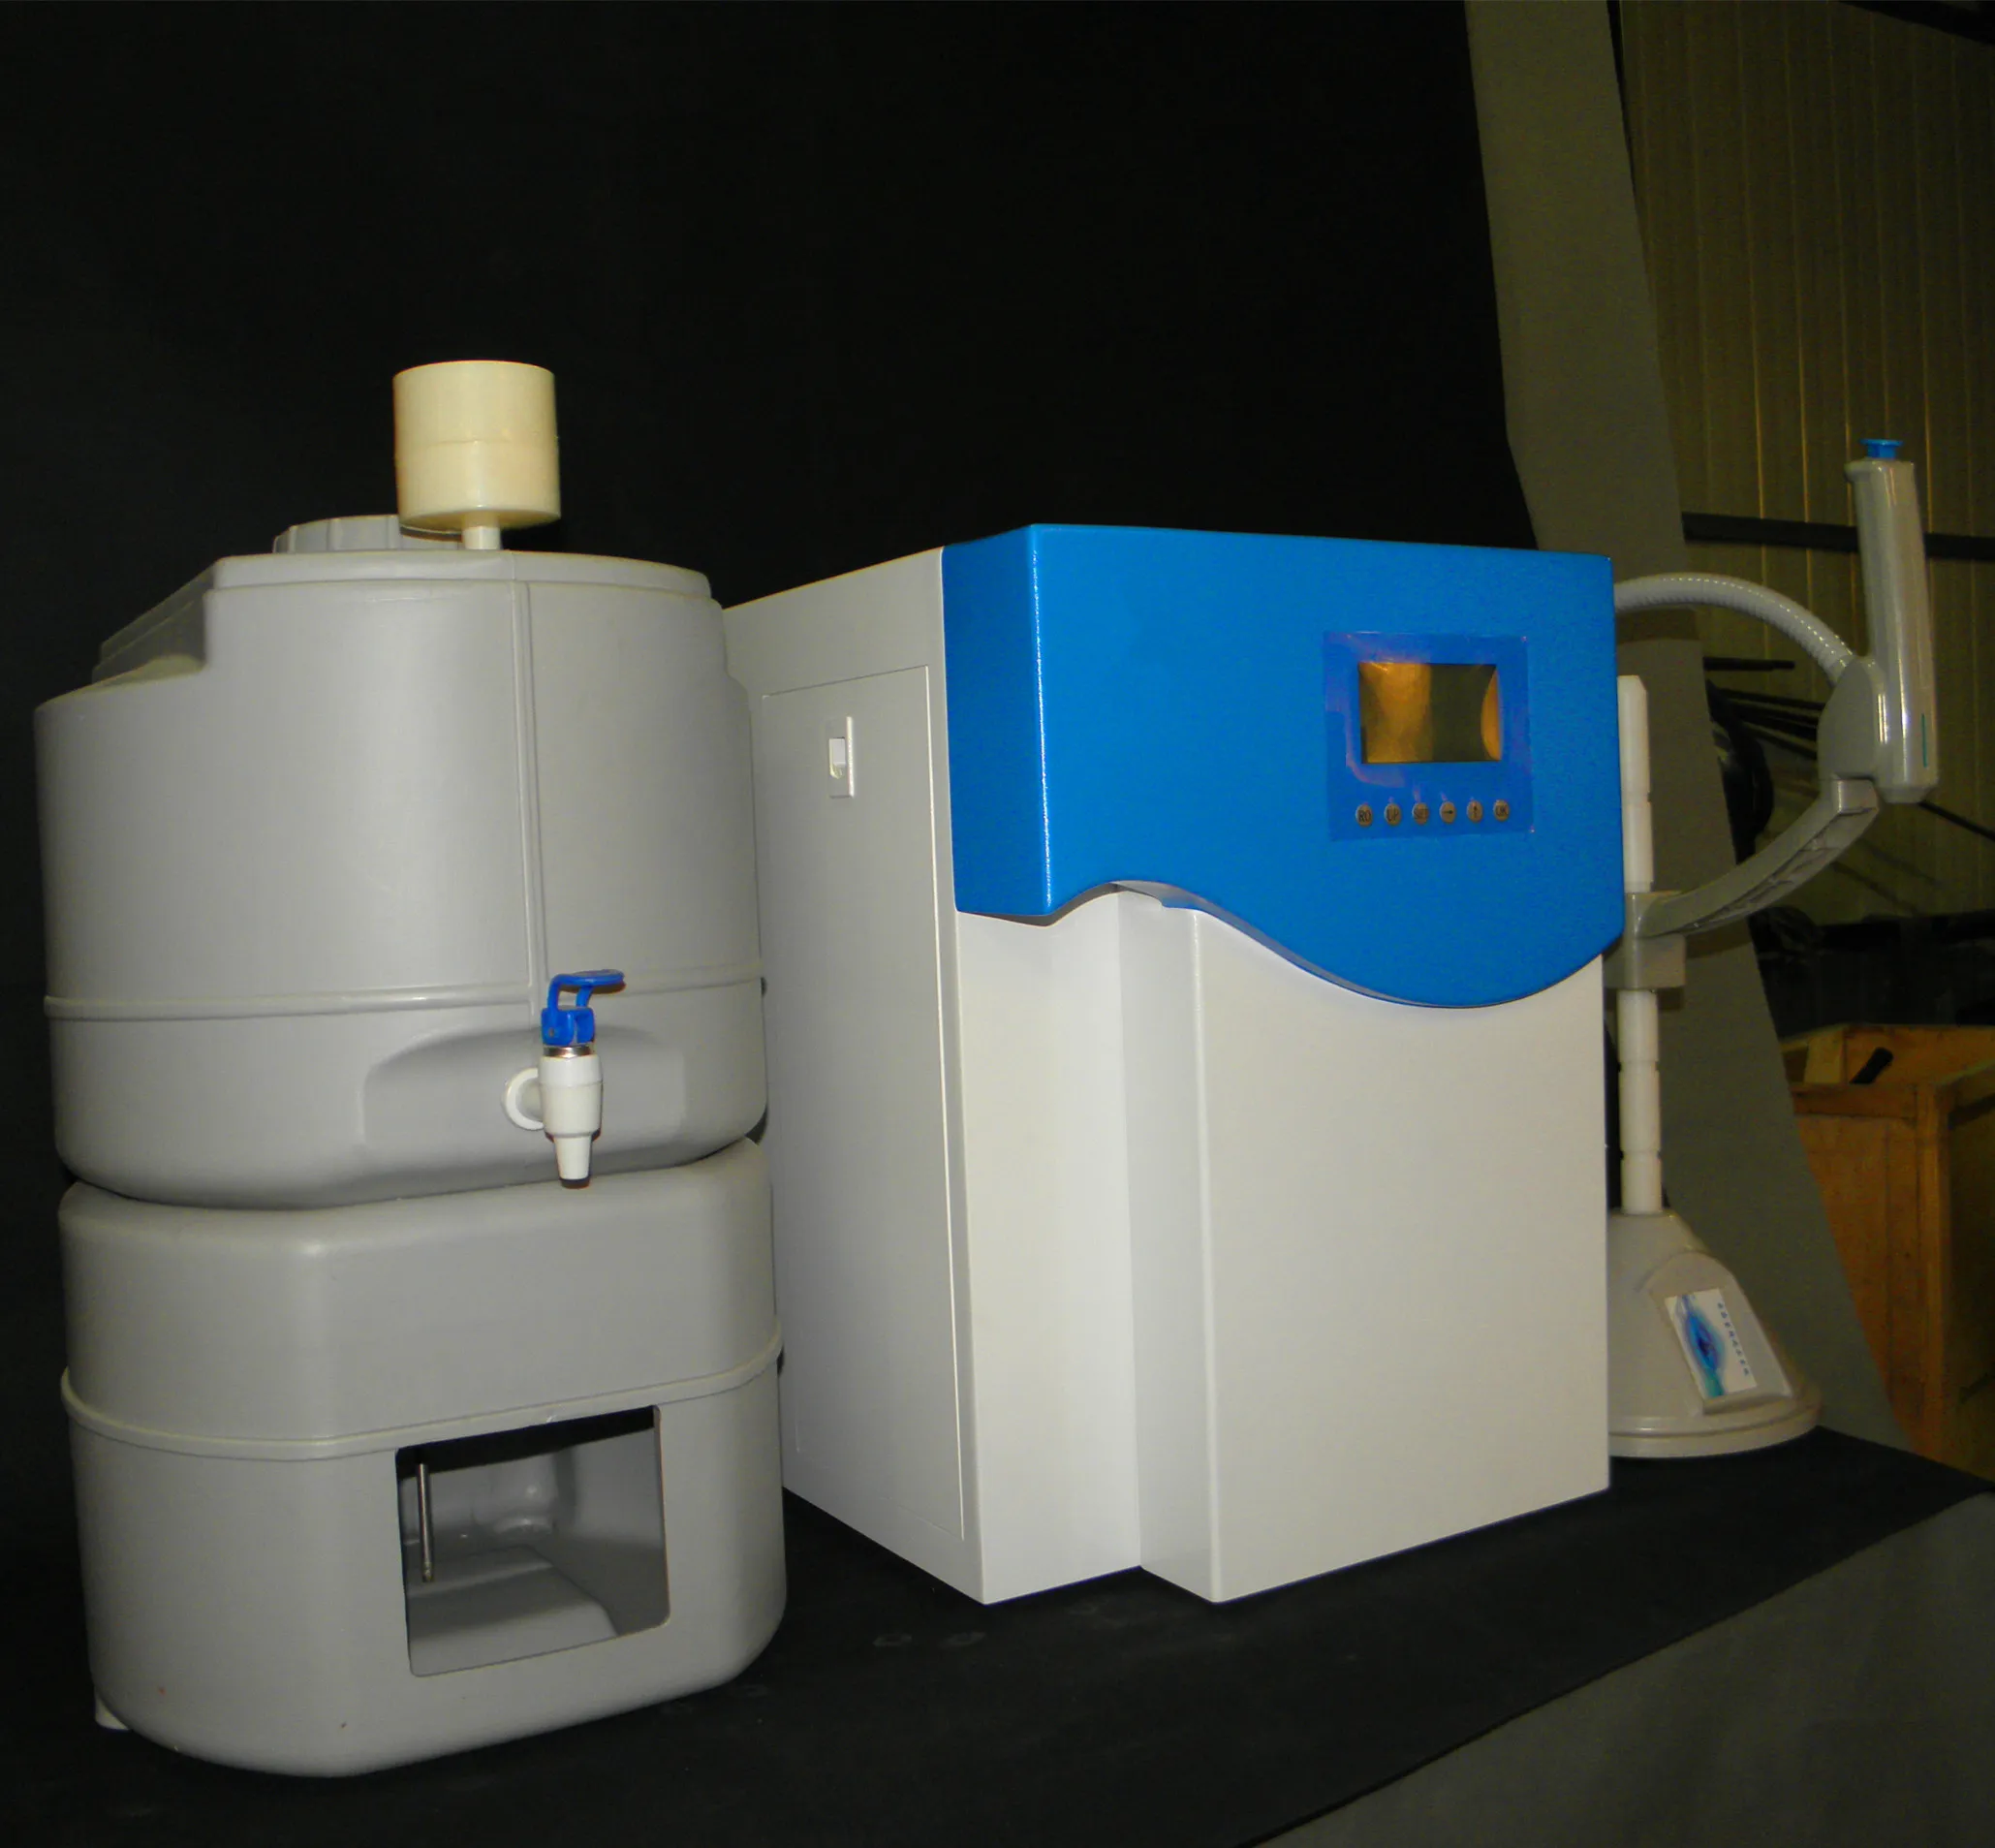 ラボ機器超純水機スタンダードシリーズ実験室用浄水システム